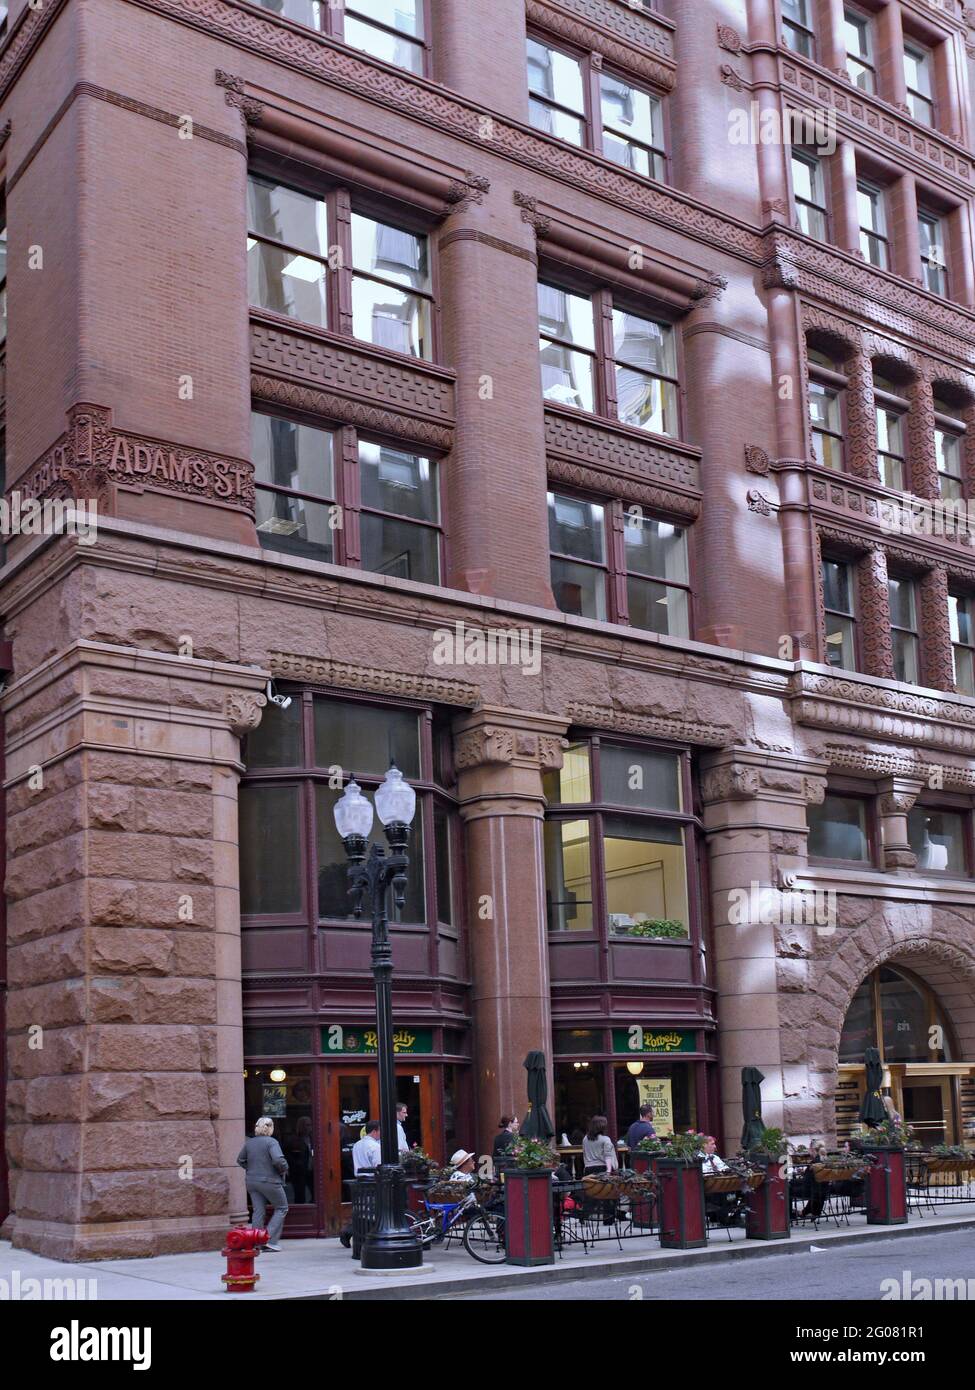 Chicago, États-Unis - 14 septembre 2010 : le Rookery Building dans le centre-ville de Chicago date de 1888 et est considéré comme un classique architectural parmi les bureaux b Banque D'Images